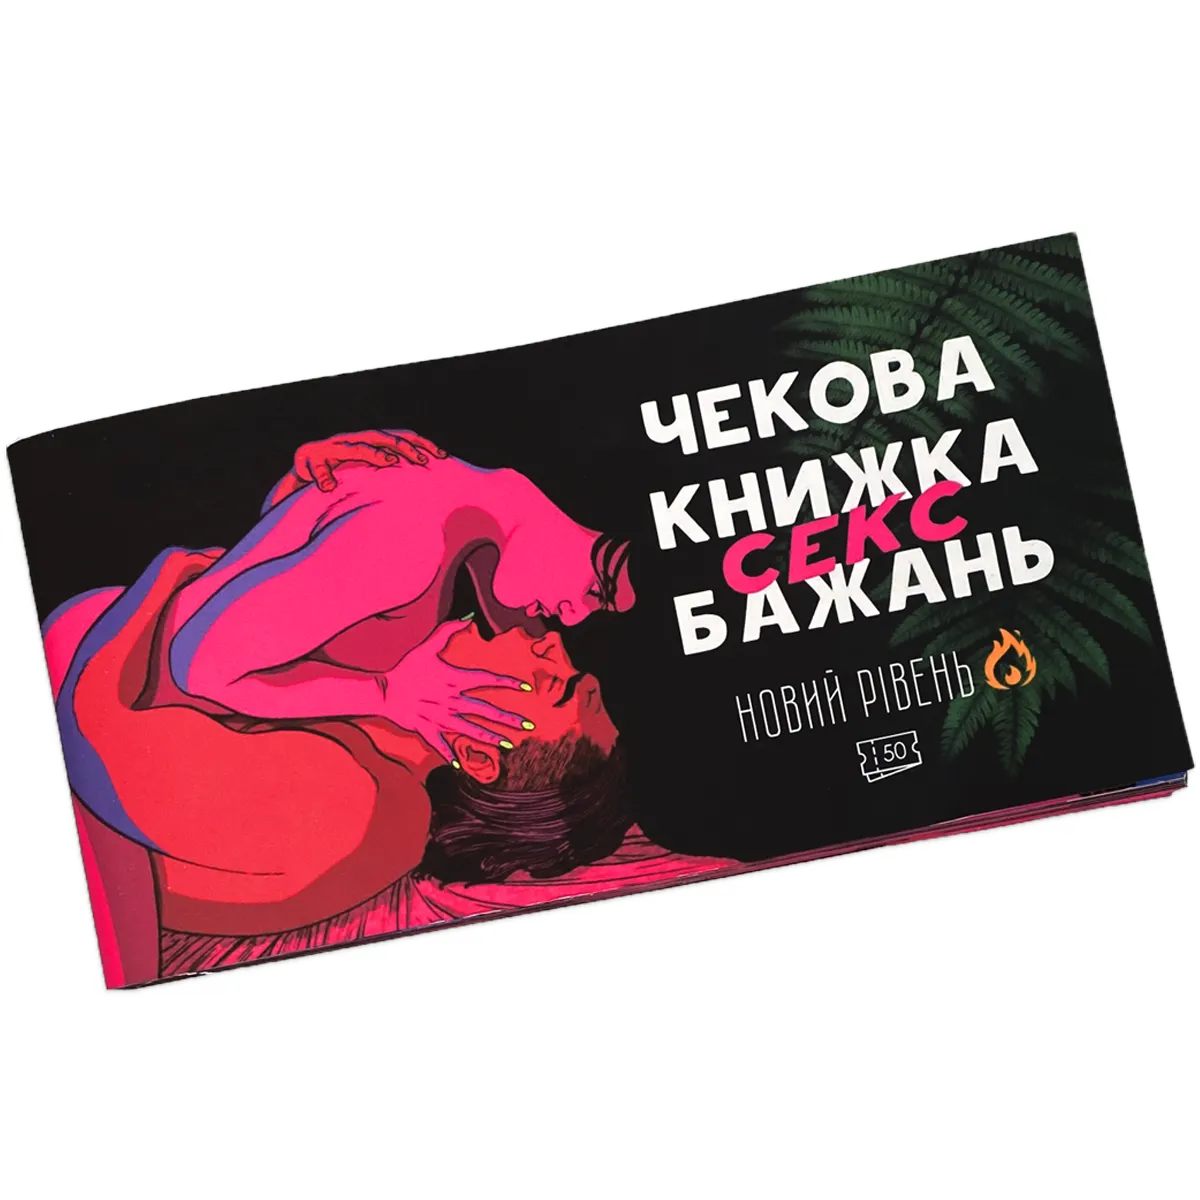 Секс игра Рецепты наслаждений для двоих, купить в Киеве, цена — интернет-магазин Podarkoff